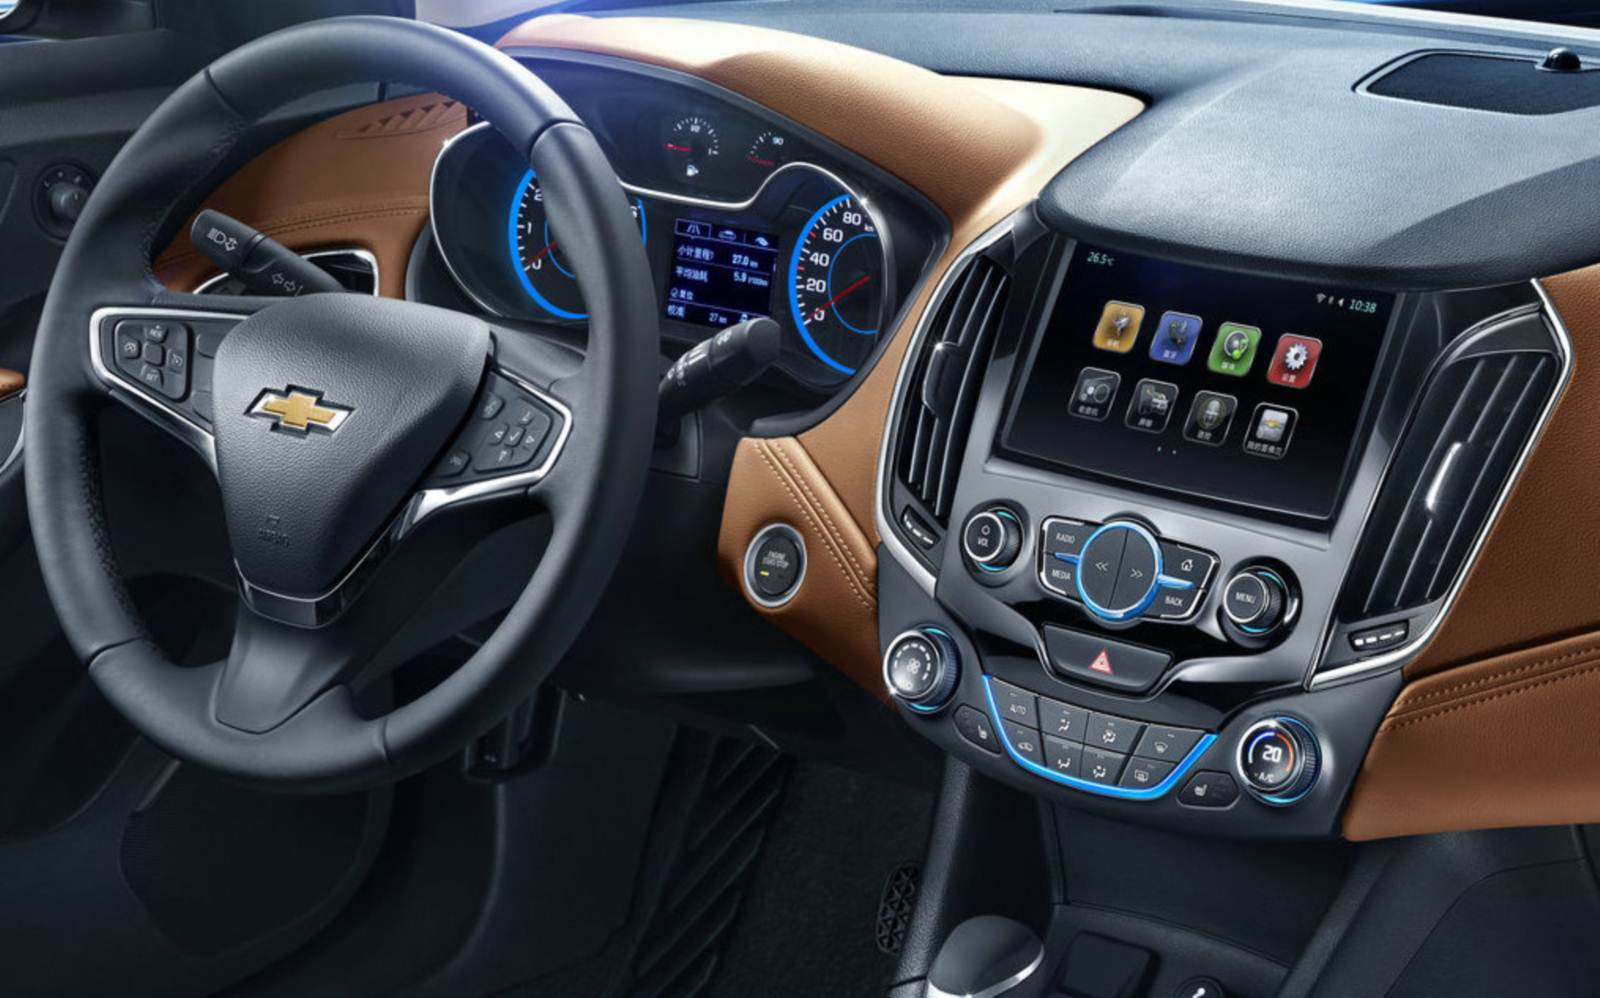 Chevrolet Cruze 2015 - interior - painel